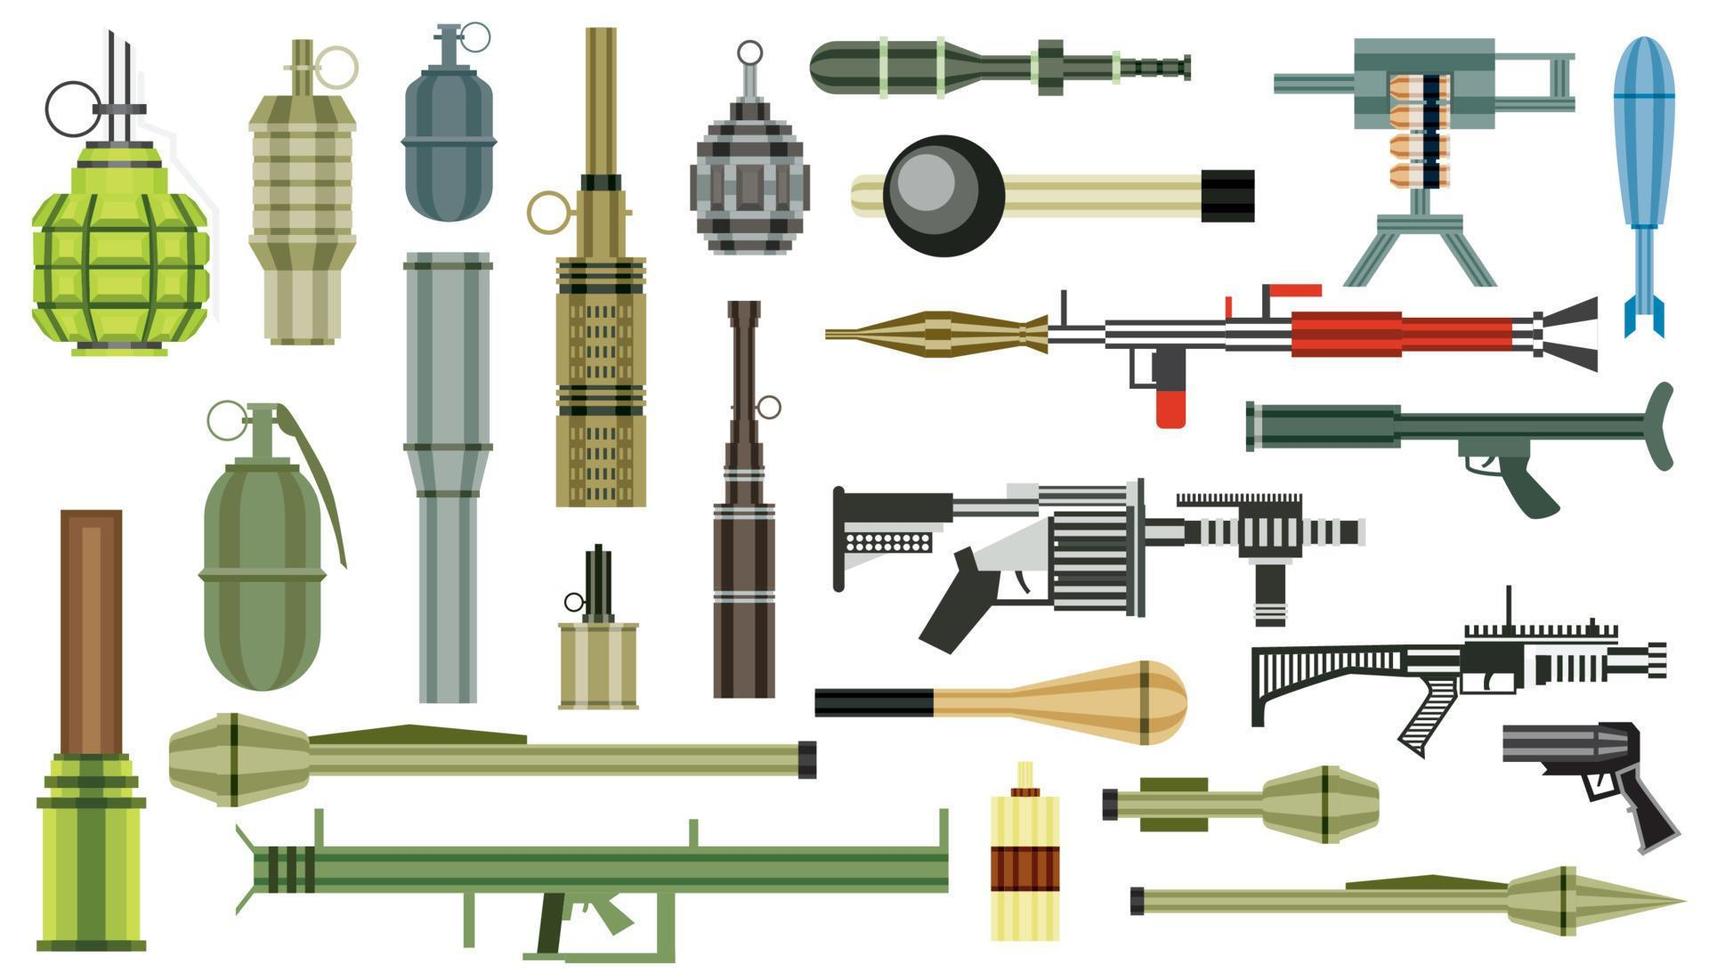 juego de granadas de armas. arma militar lanzagranadas aislado sobre fondo blanco. vector